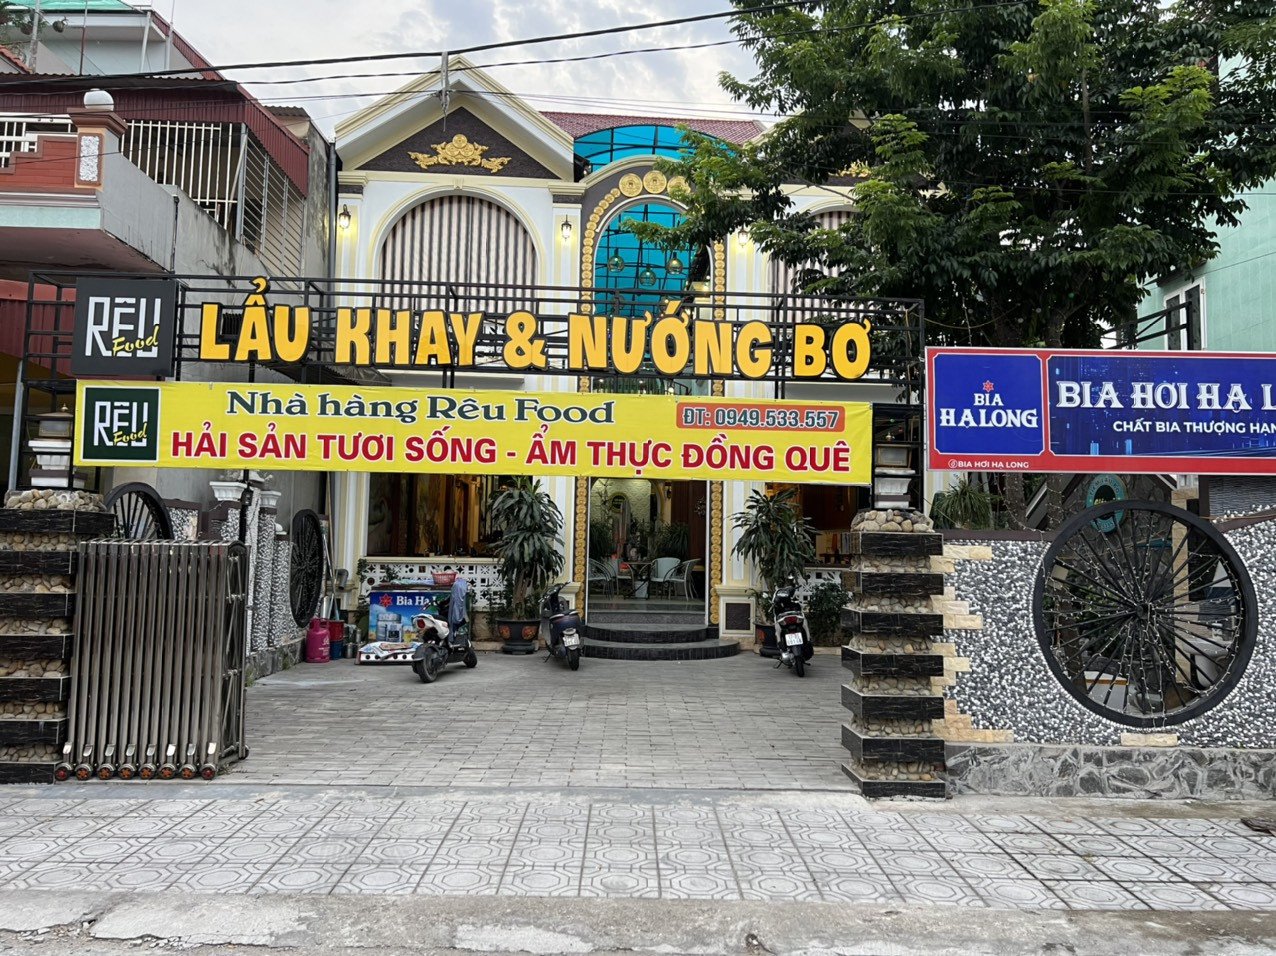 Bán nhà Rêu Food new new giá tốt vị trí vô cùng đắc địa tại Huyện Quỳnh Phụ, Tỉnh Thái Bình